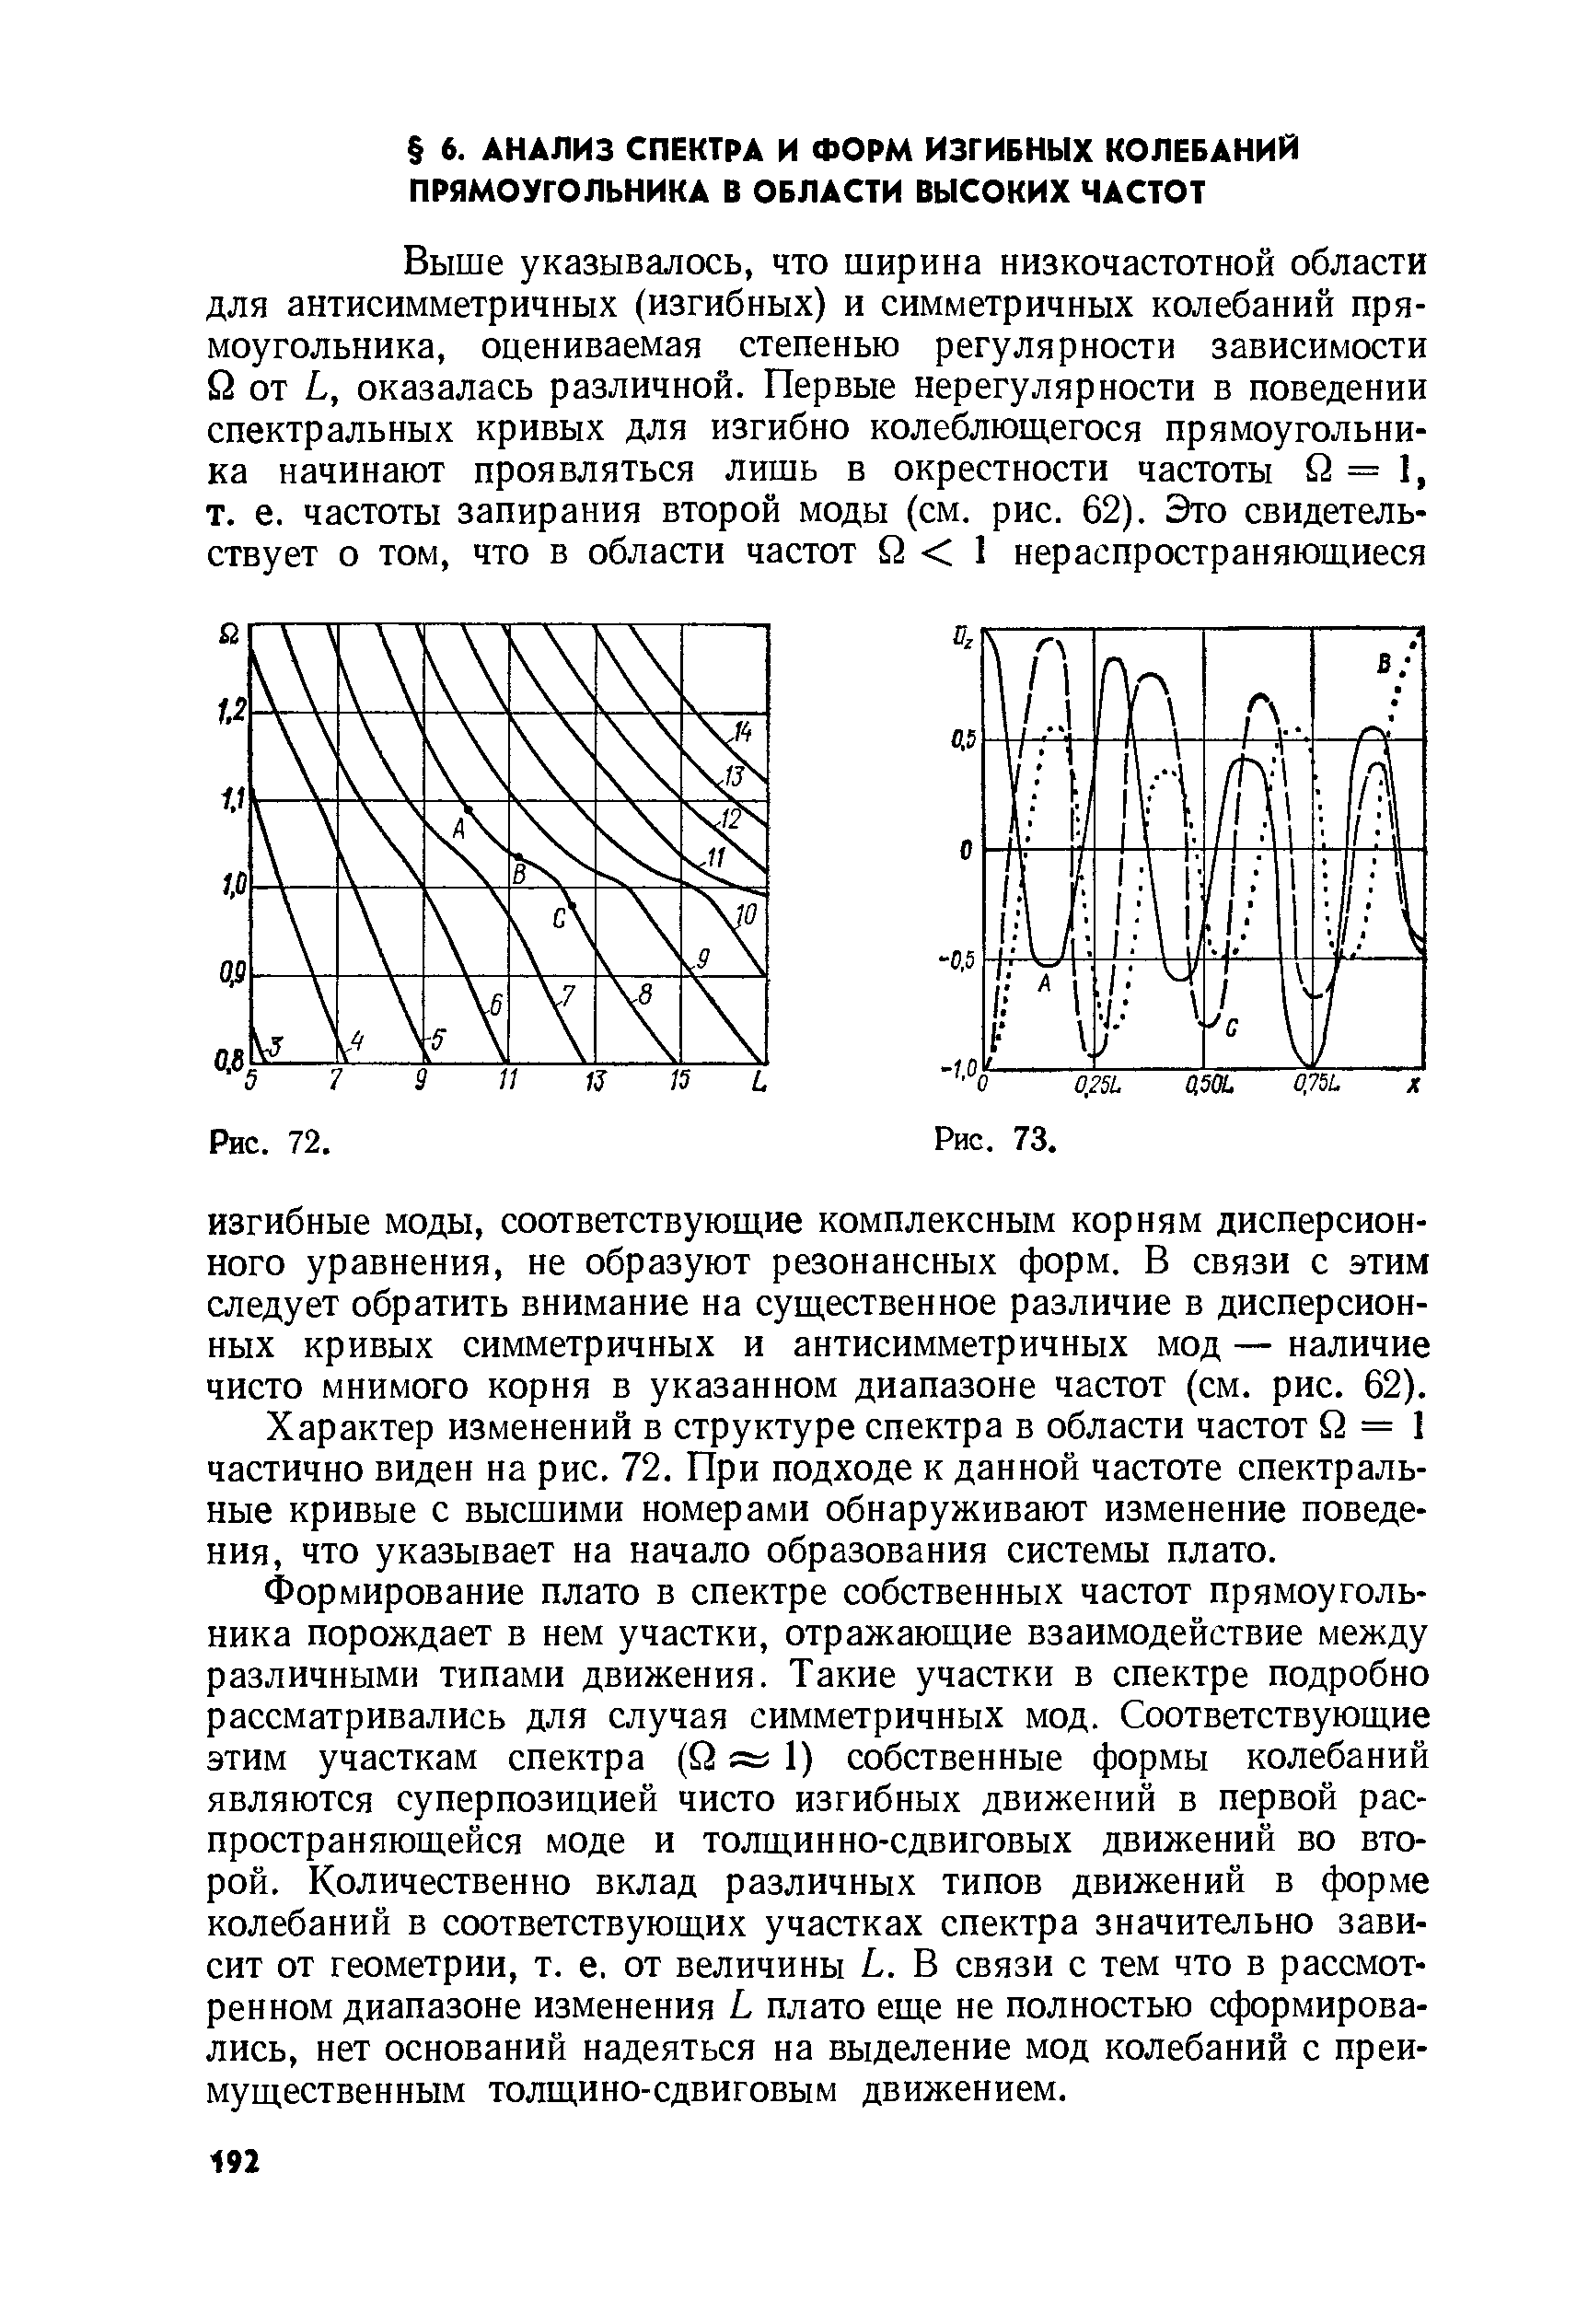 Характер изменений в структуре спектра в области частот Q = 1 частично виден на рис. 72. При подходе к данной частоте спектральные кривые с высшими номерами обнаруживают изменение поведения, что указывает на начало образования системы плато.
